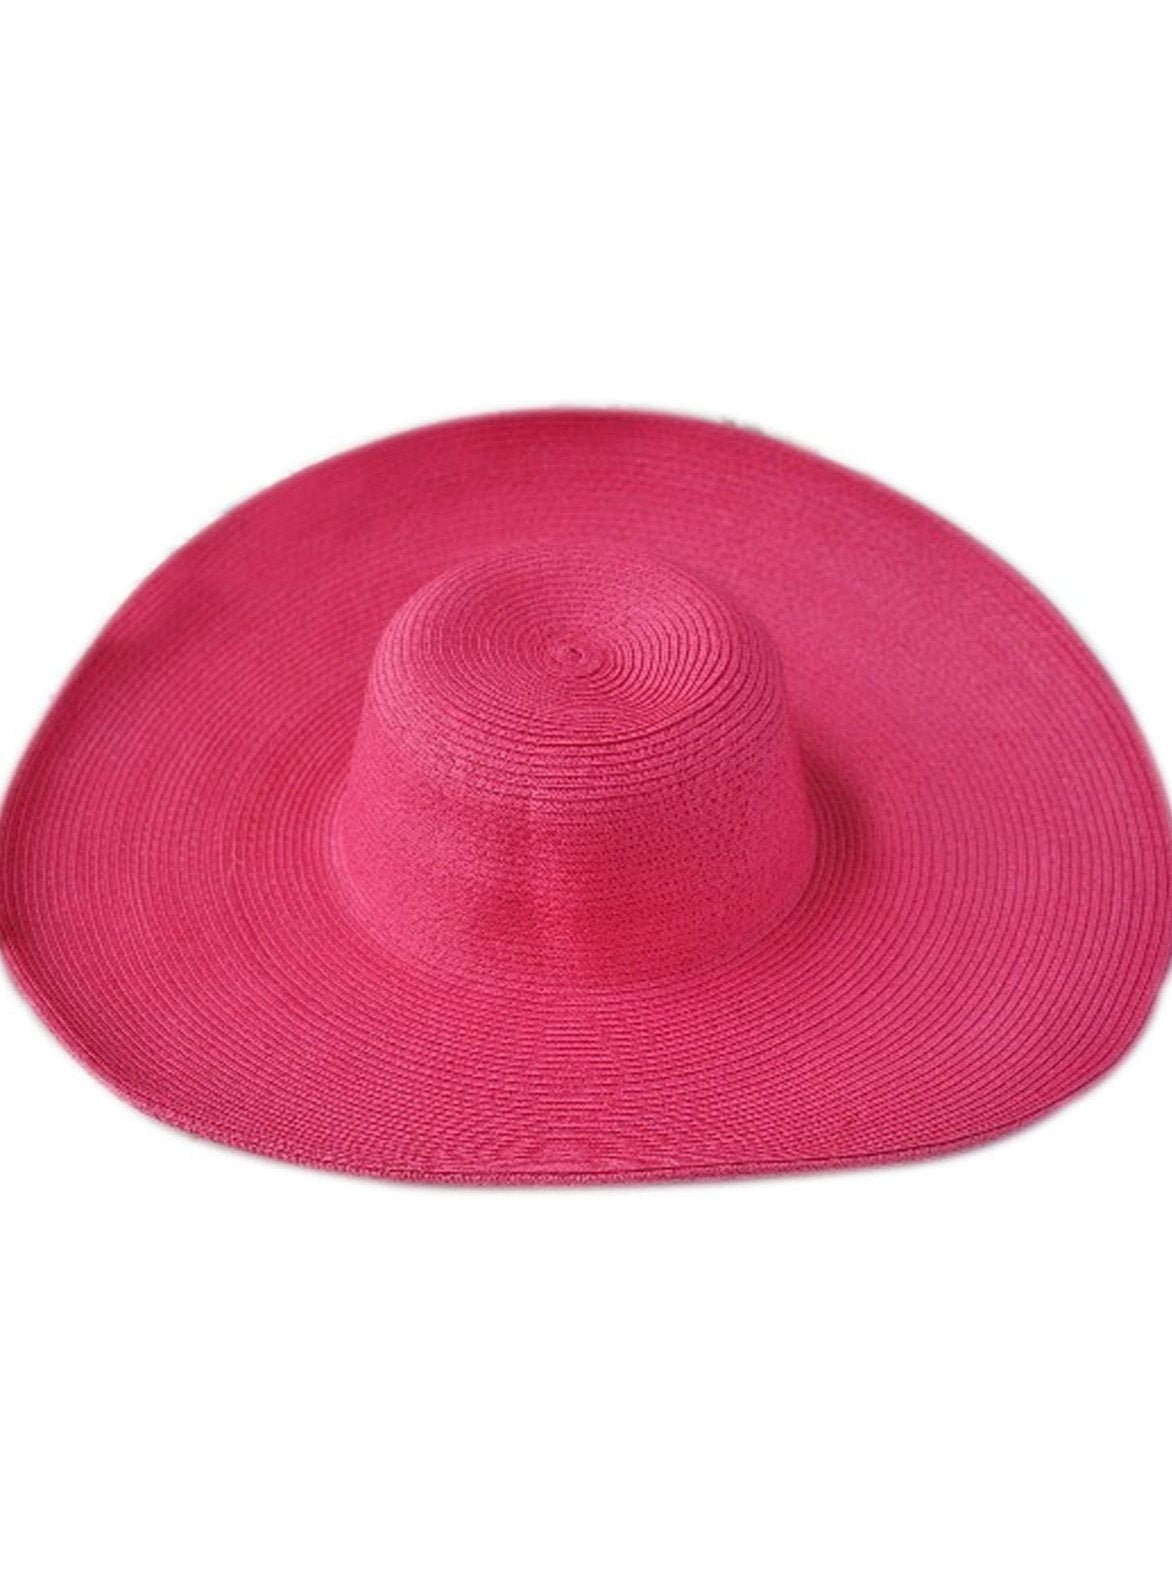 Womens Summer Wide Brim Oversized Straw Hat - Pink - Womens Accessories